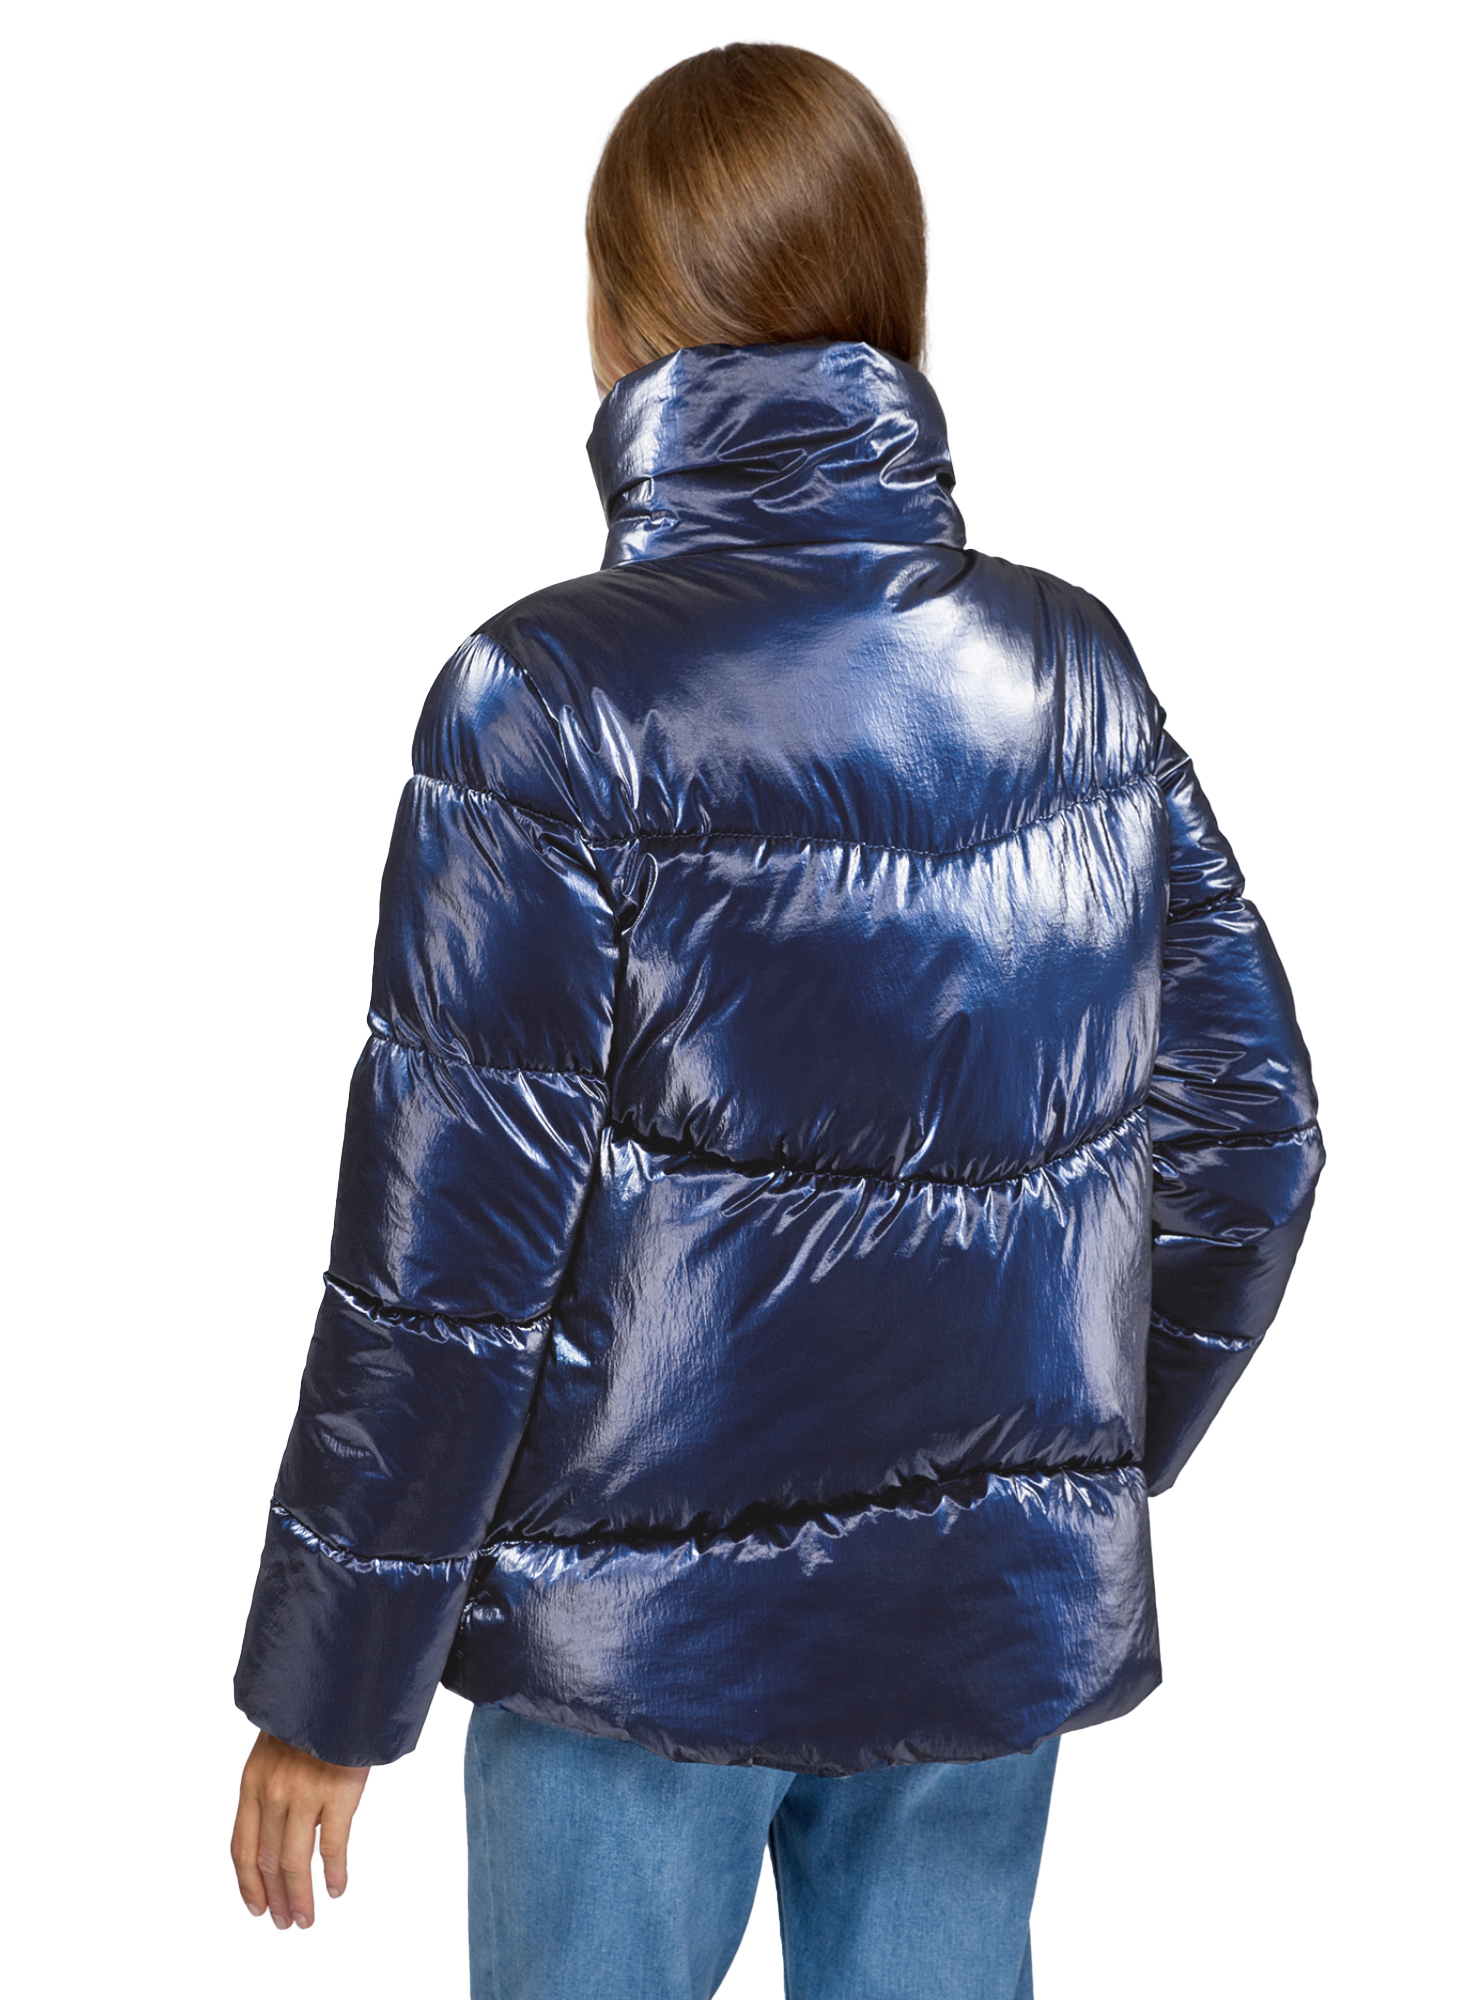 Куртка женская oodji 10203098-4 синяя 42/170